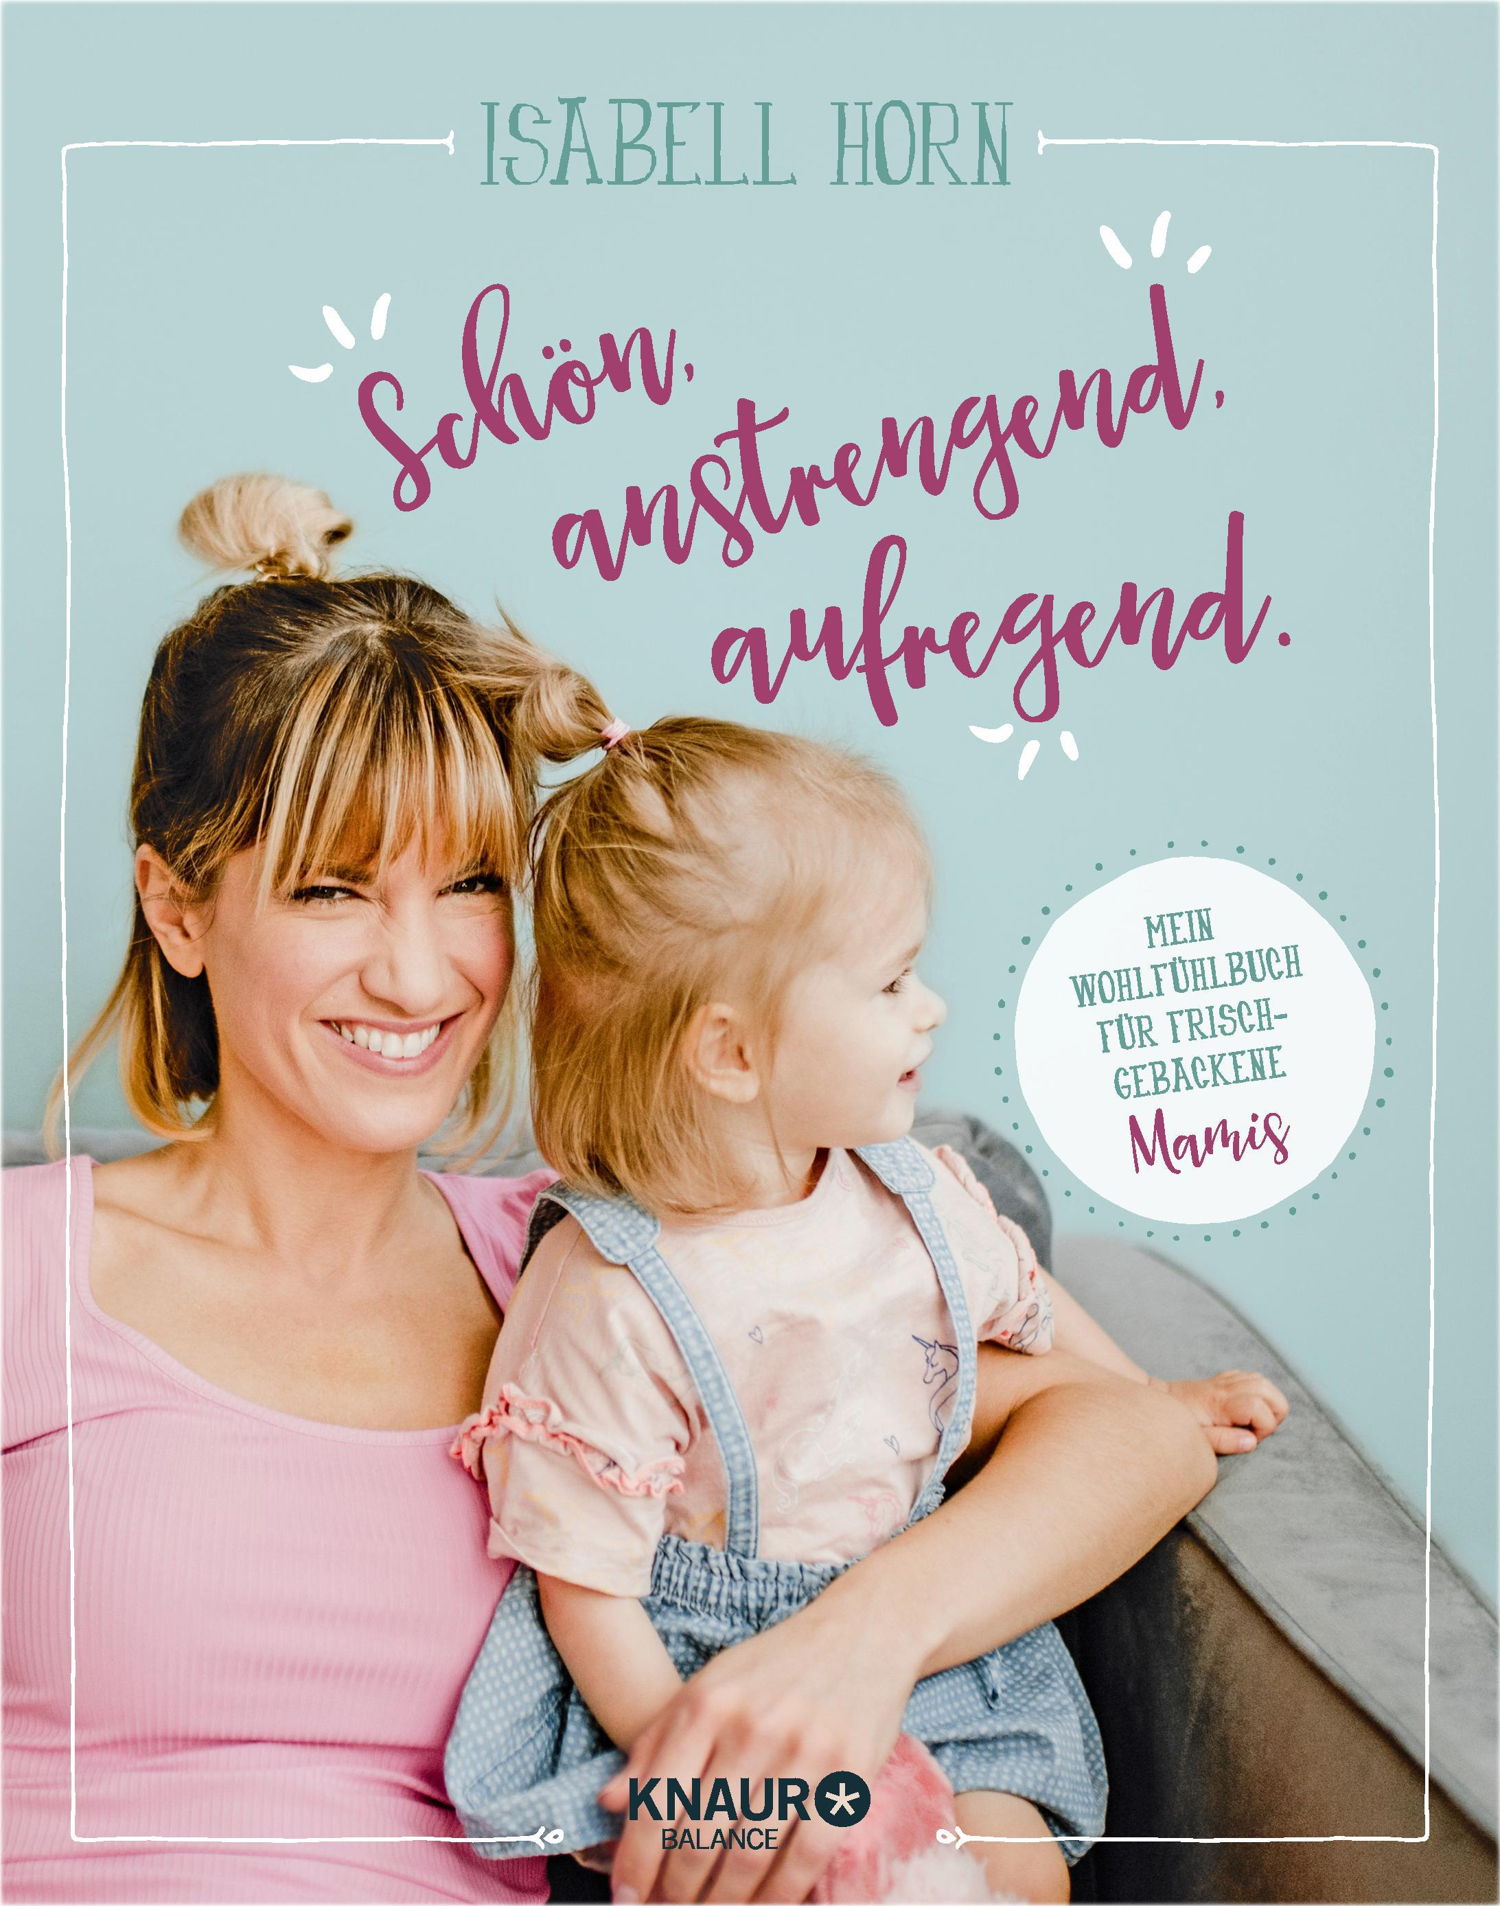 Das neue Wohlfühlbuch für frischgebackene Mamas mit hilfreichen Ratschlägen rund um das Mama-Sein, praxisnahen Tipps und Tricks für den neuen Alltag mit Baby.